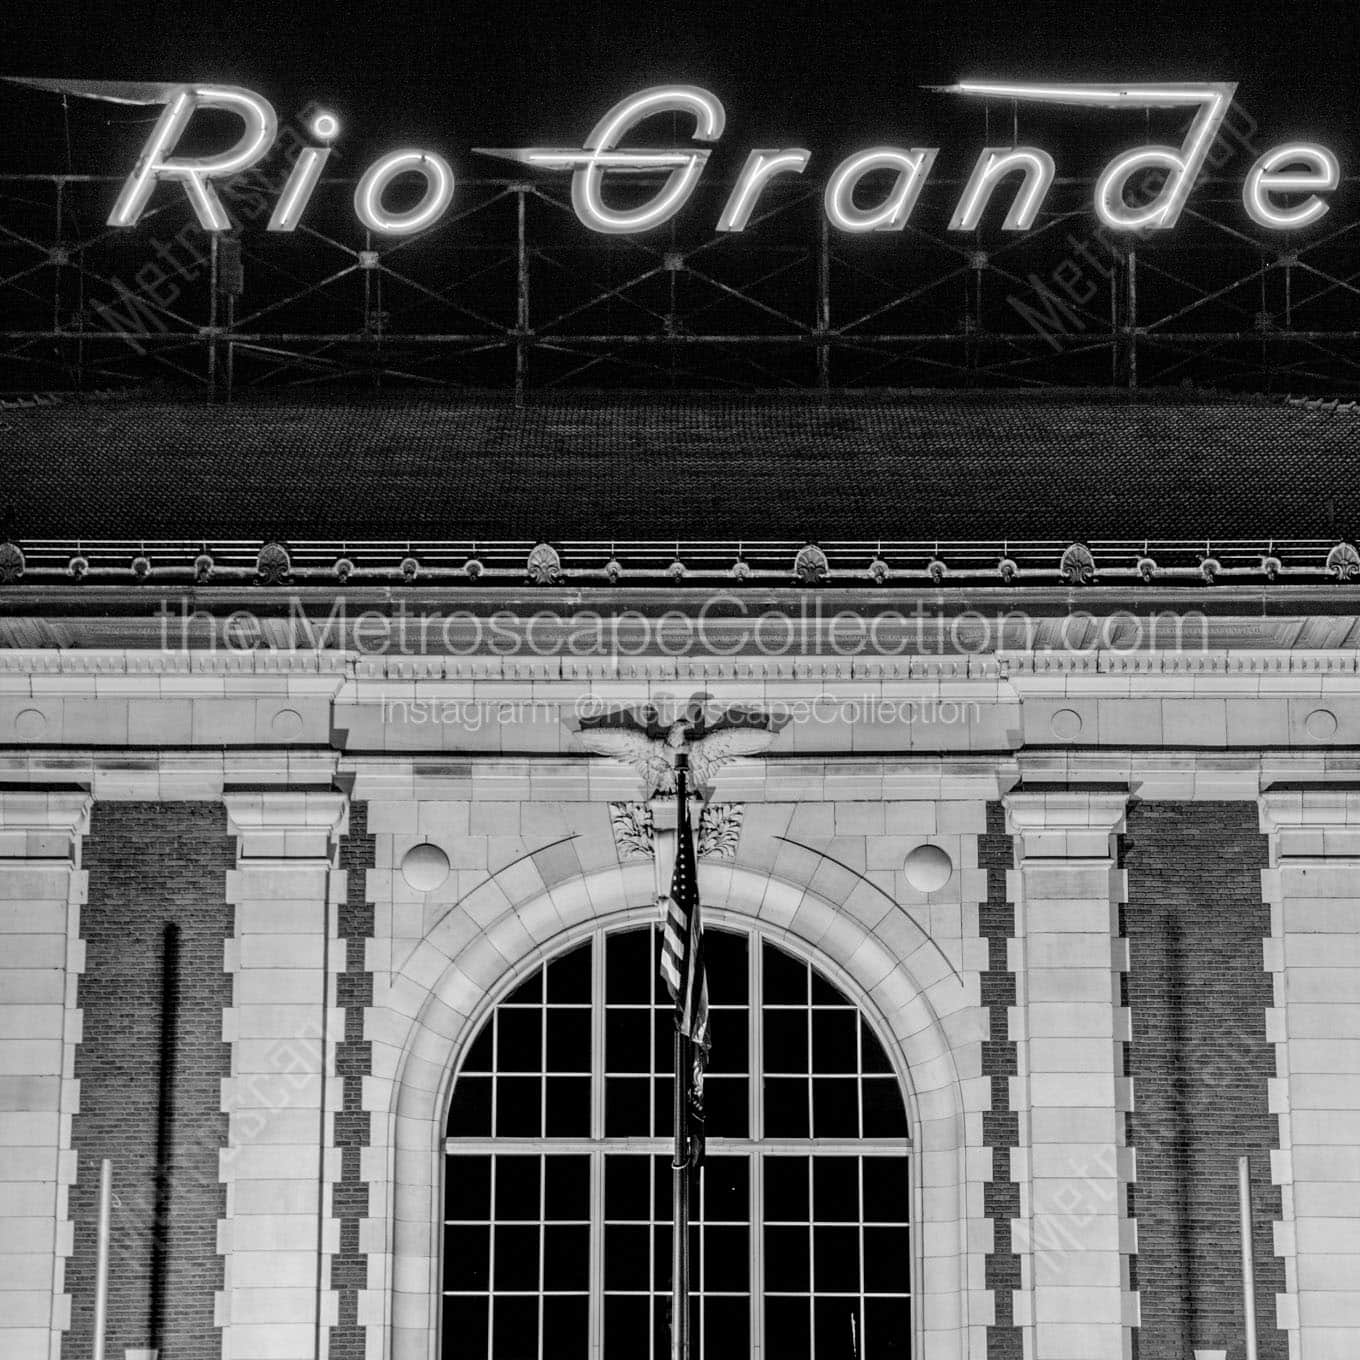 rio grande station Black & White Office Art